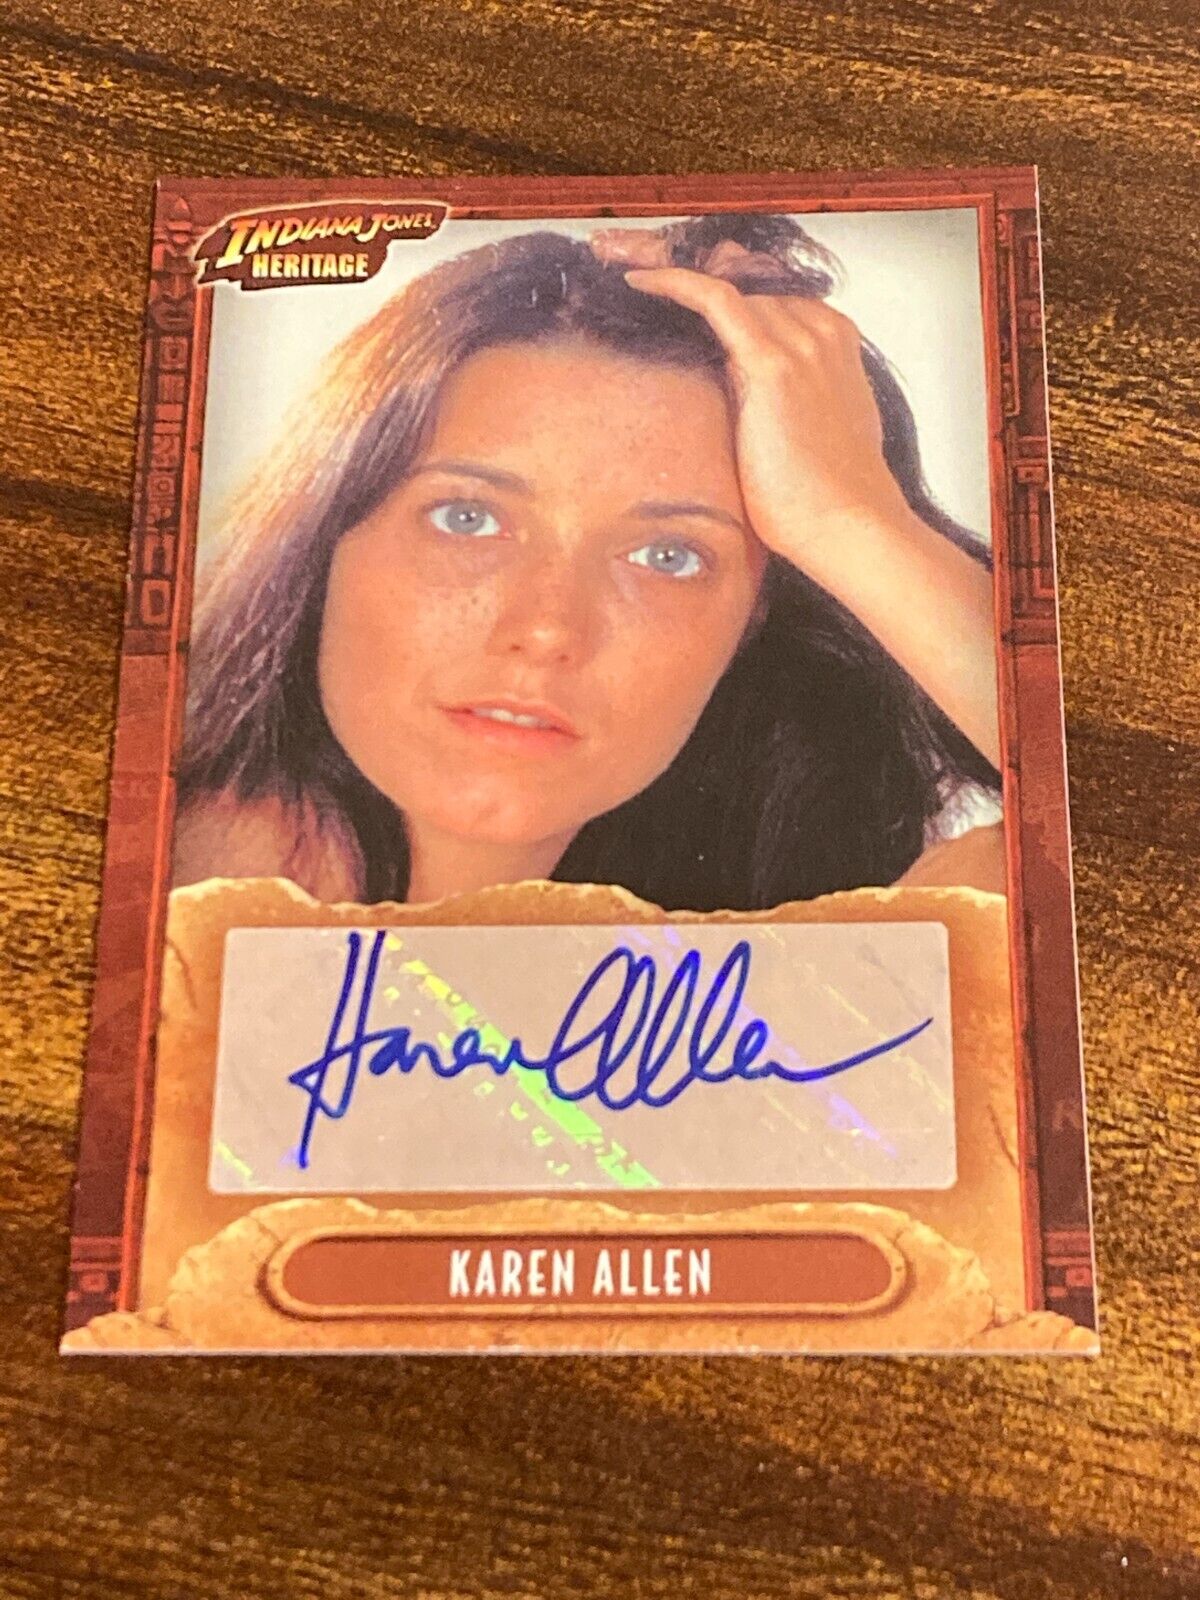 Karen Allen as Marion Ravenwood 2008 Topps Indiana Jones Heritage Autograph Card